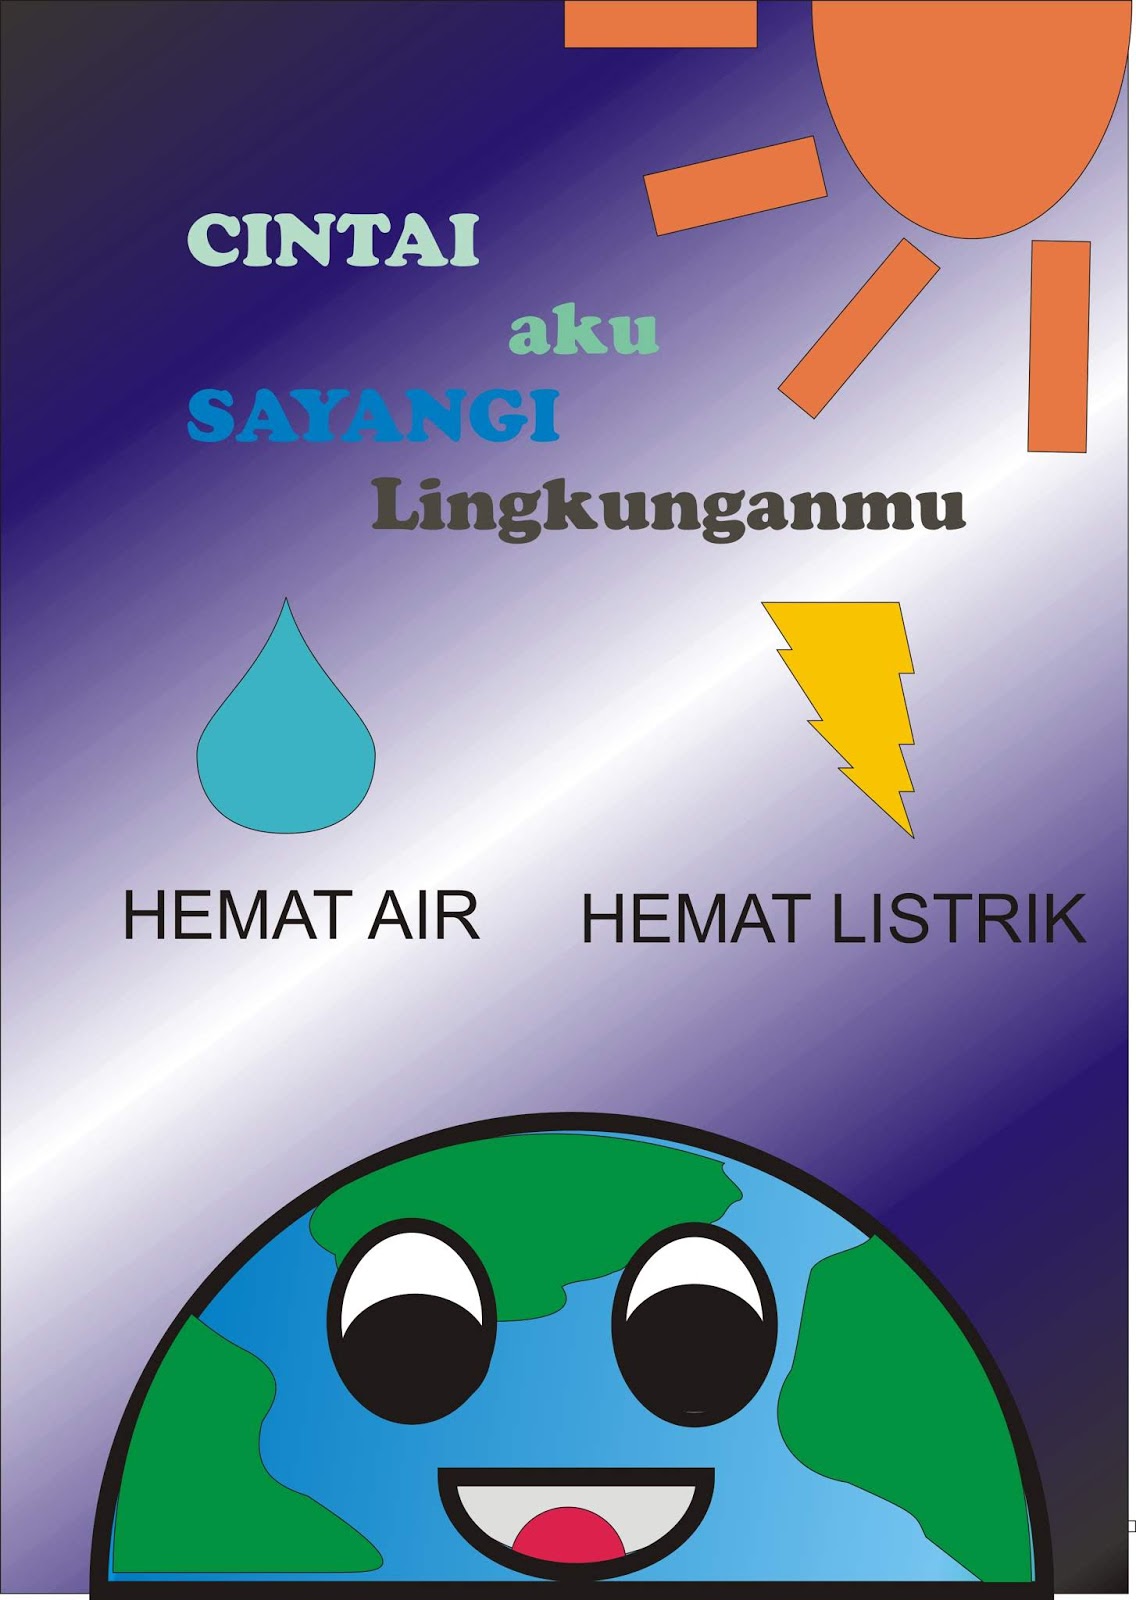 Grclchrisanta Poster Lingkungan Hidup